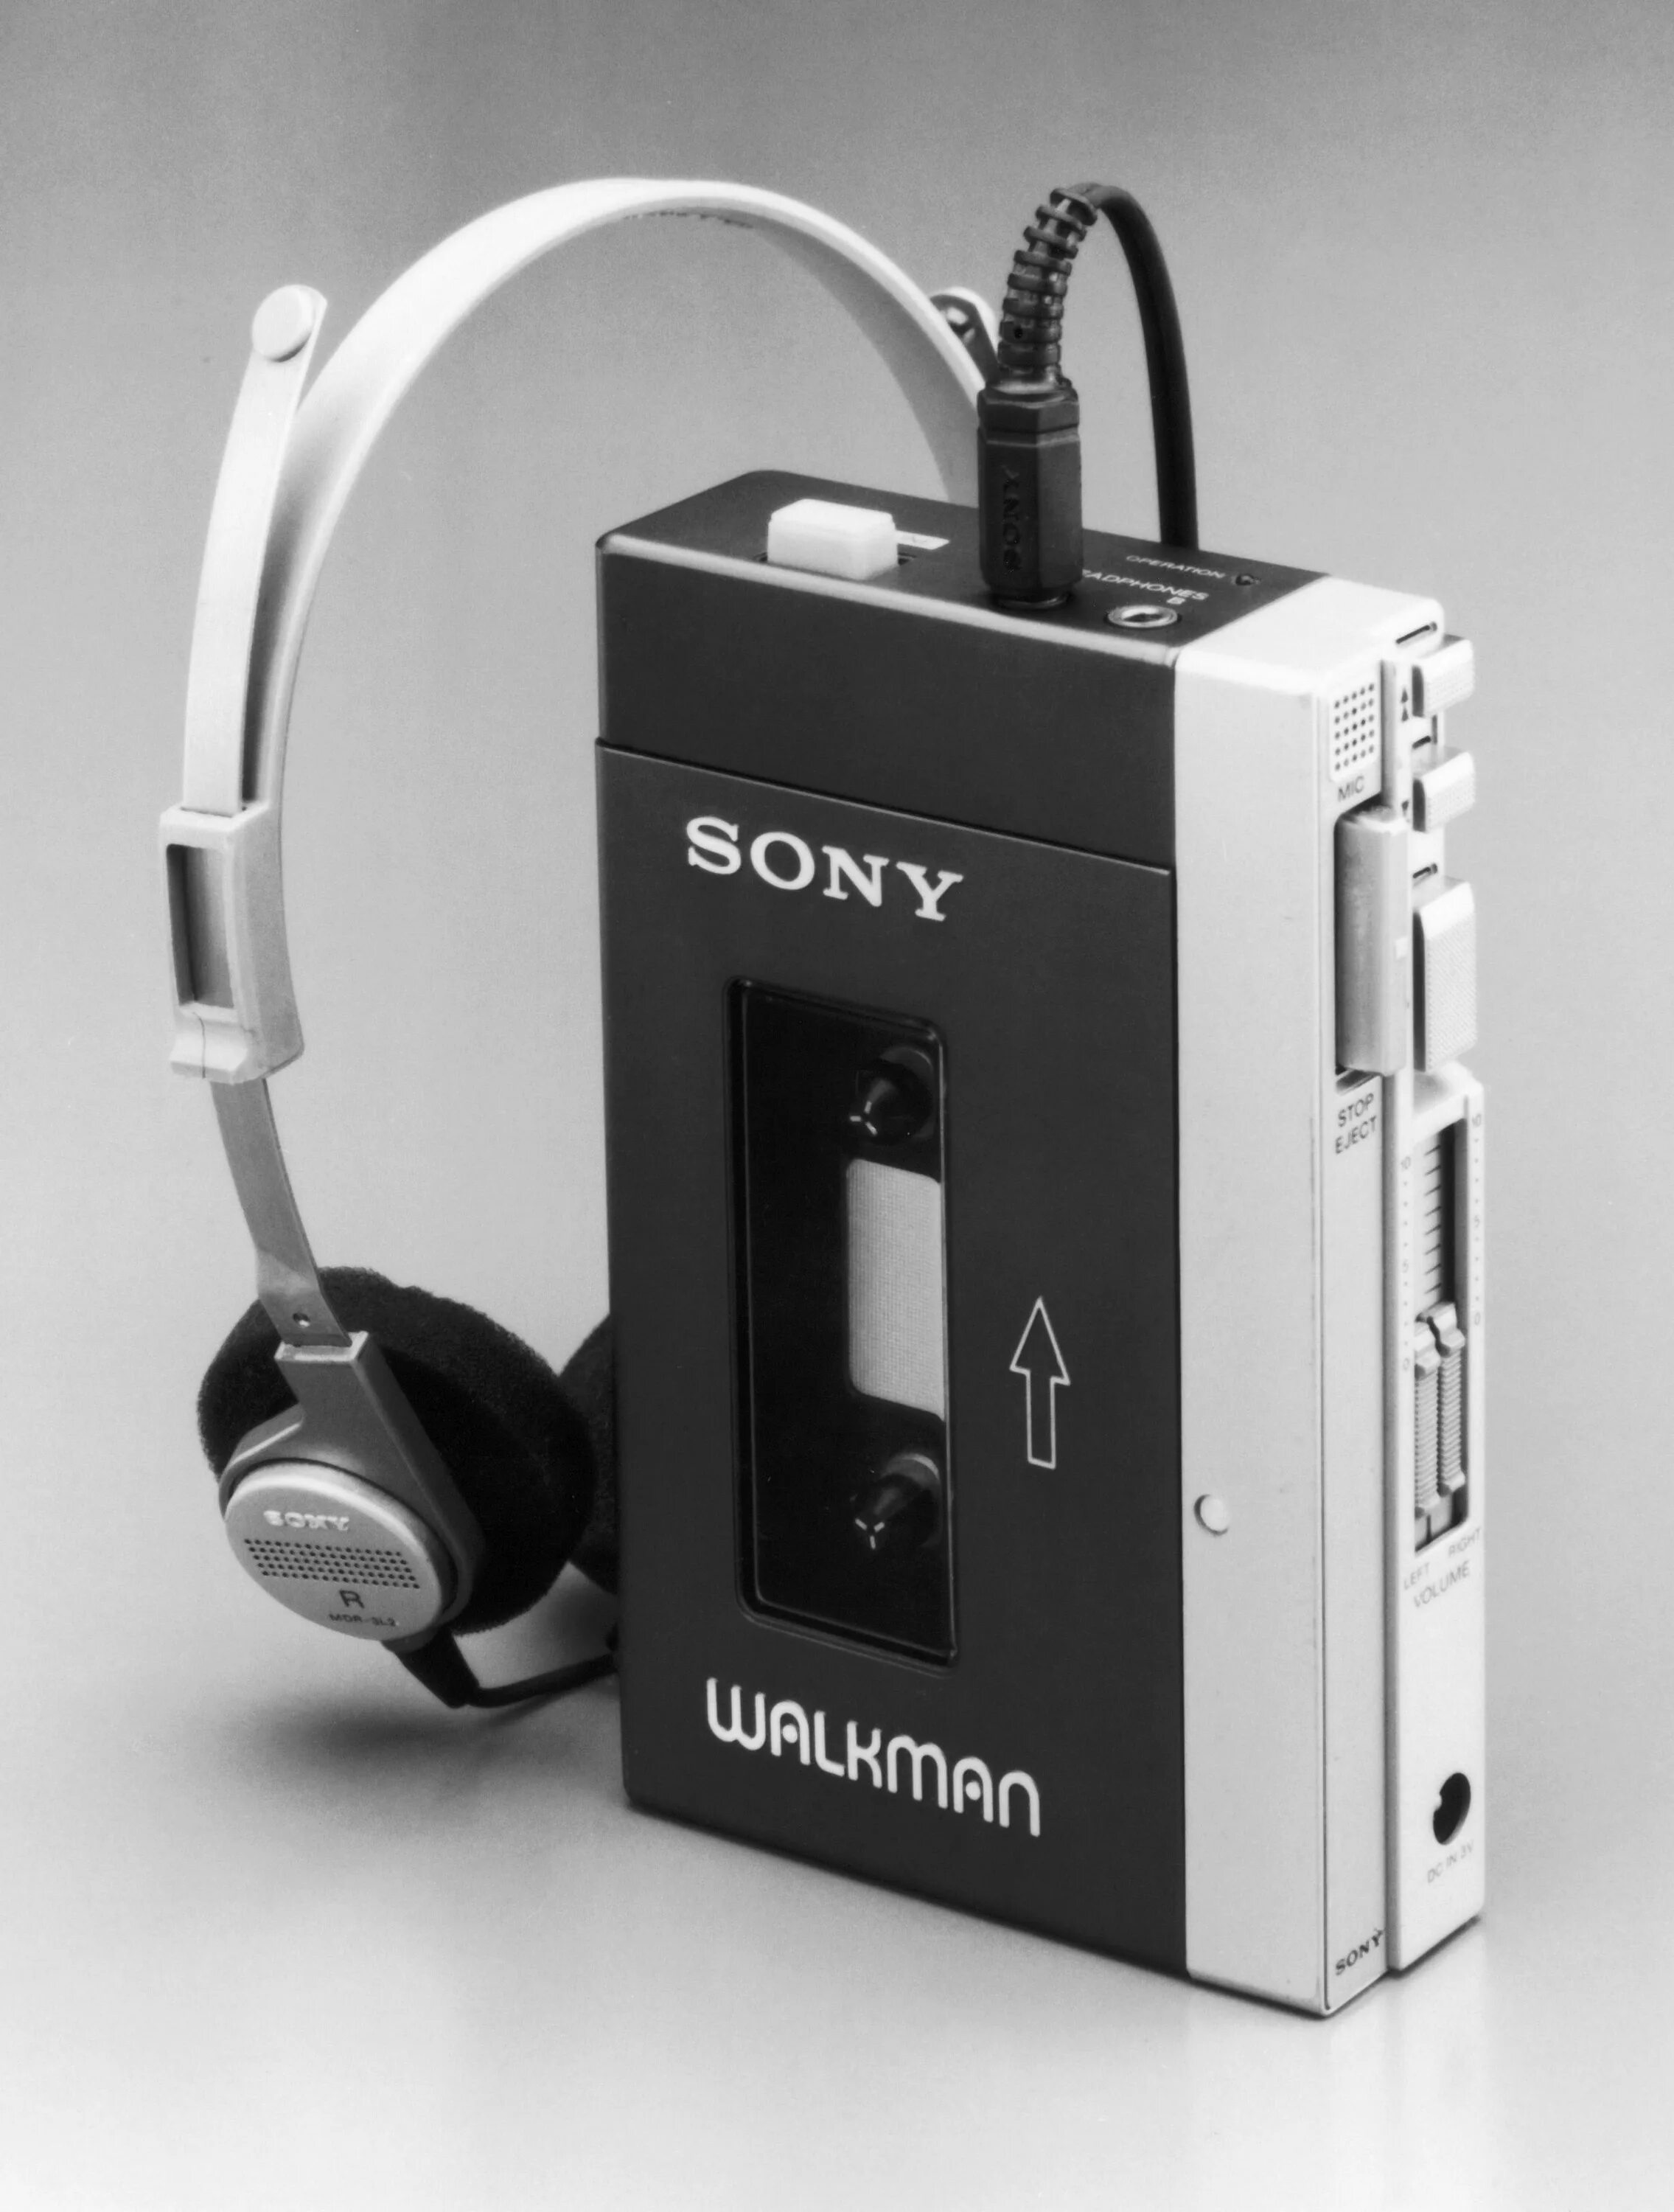 Sony walkman кассетный купить. Sony Walkman 1979. Кассетный плеер Sony Walkman. Аудиоплеер Sony Walkman 1979. Sony Walkman кассетный 1980.